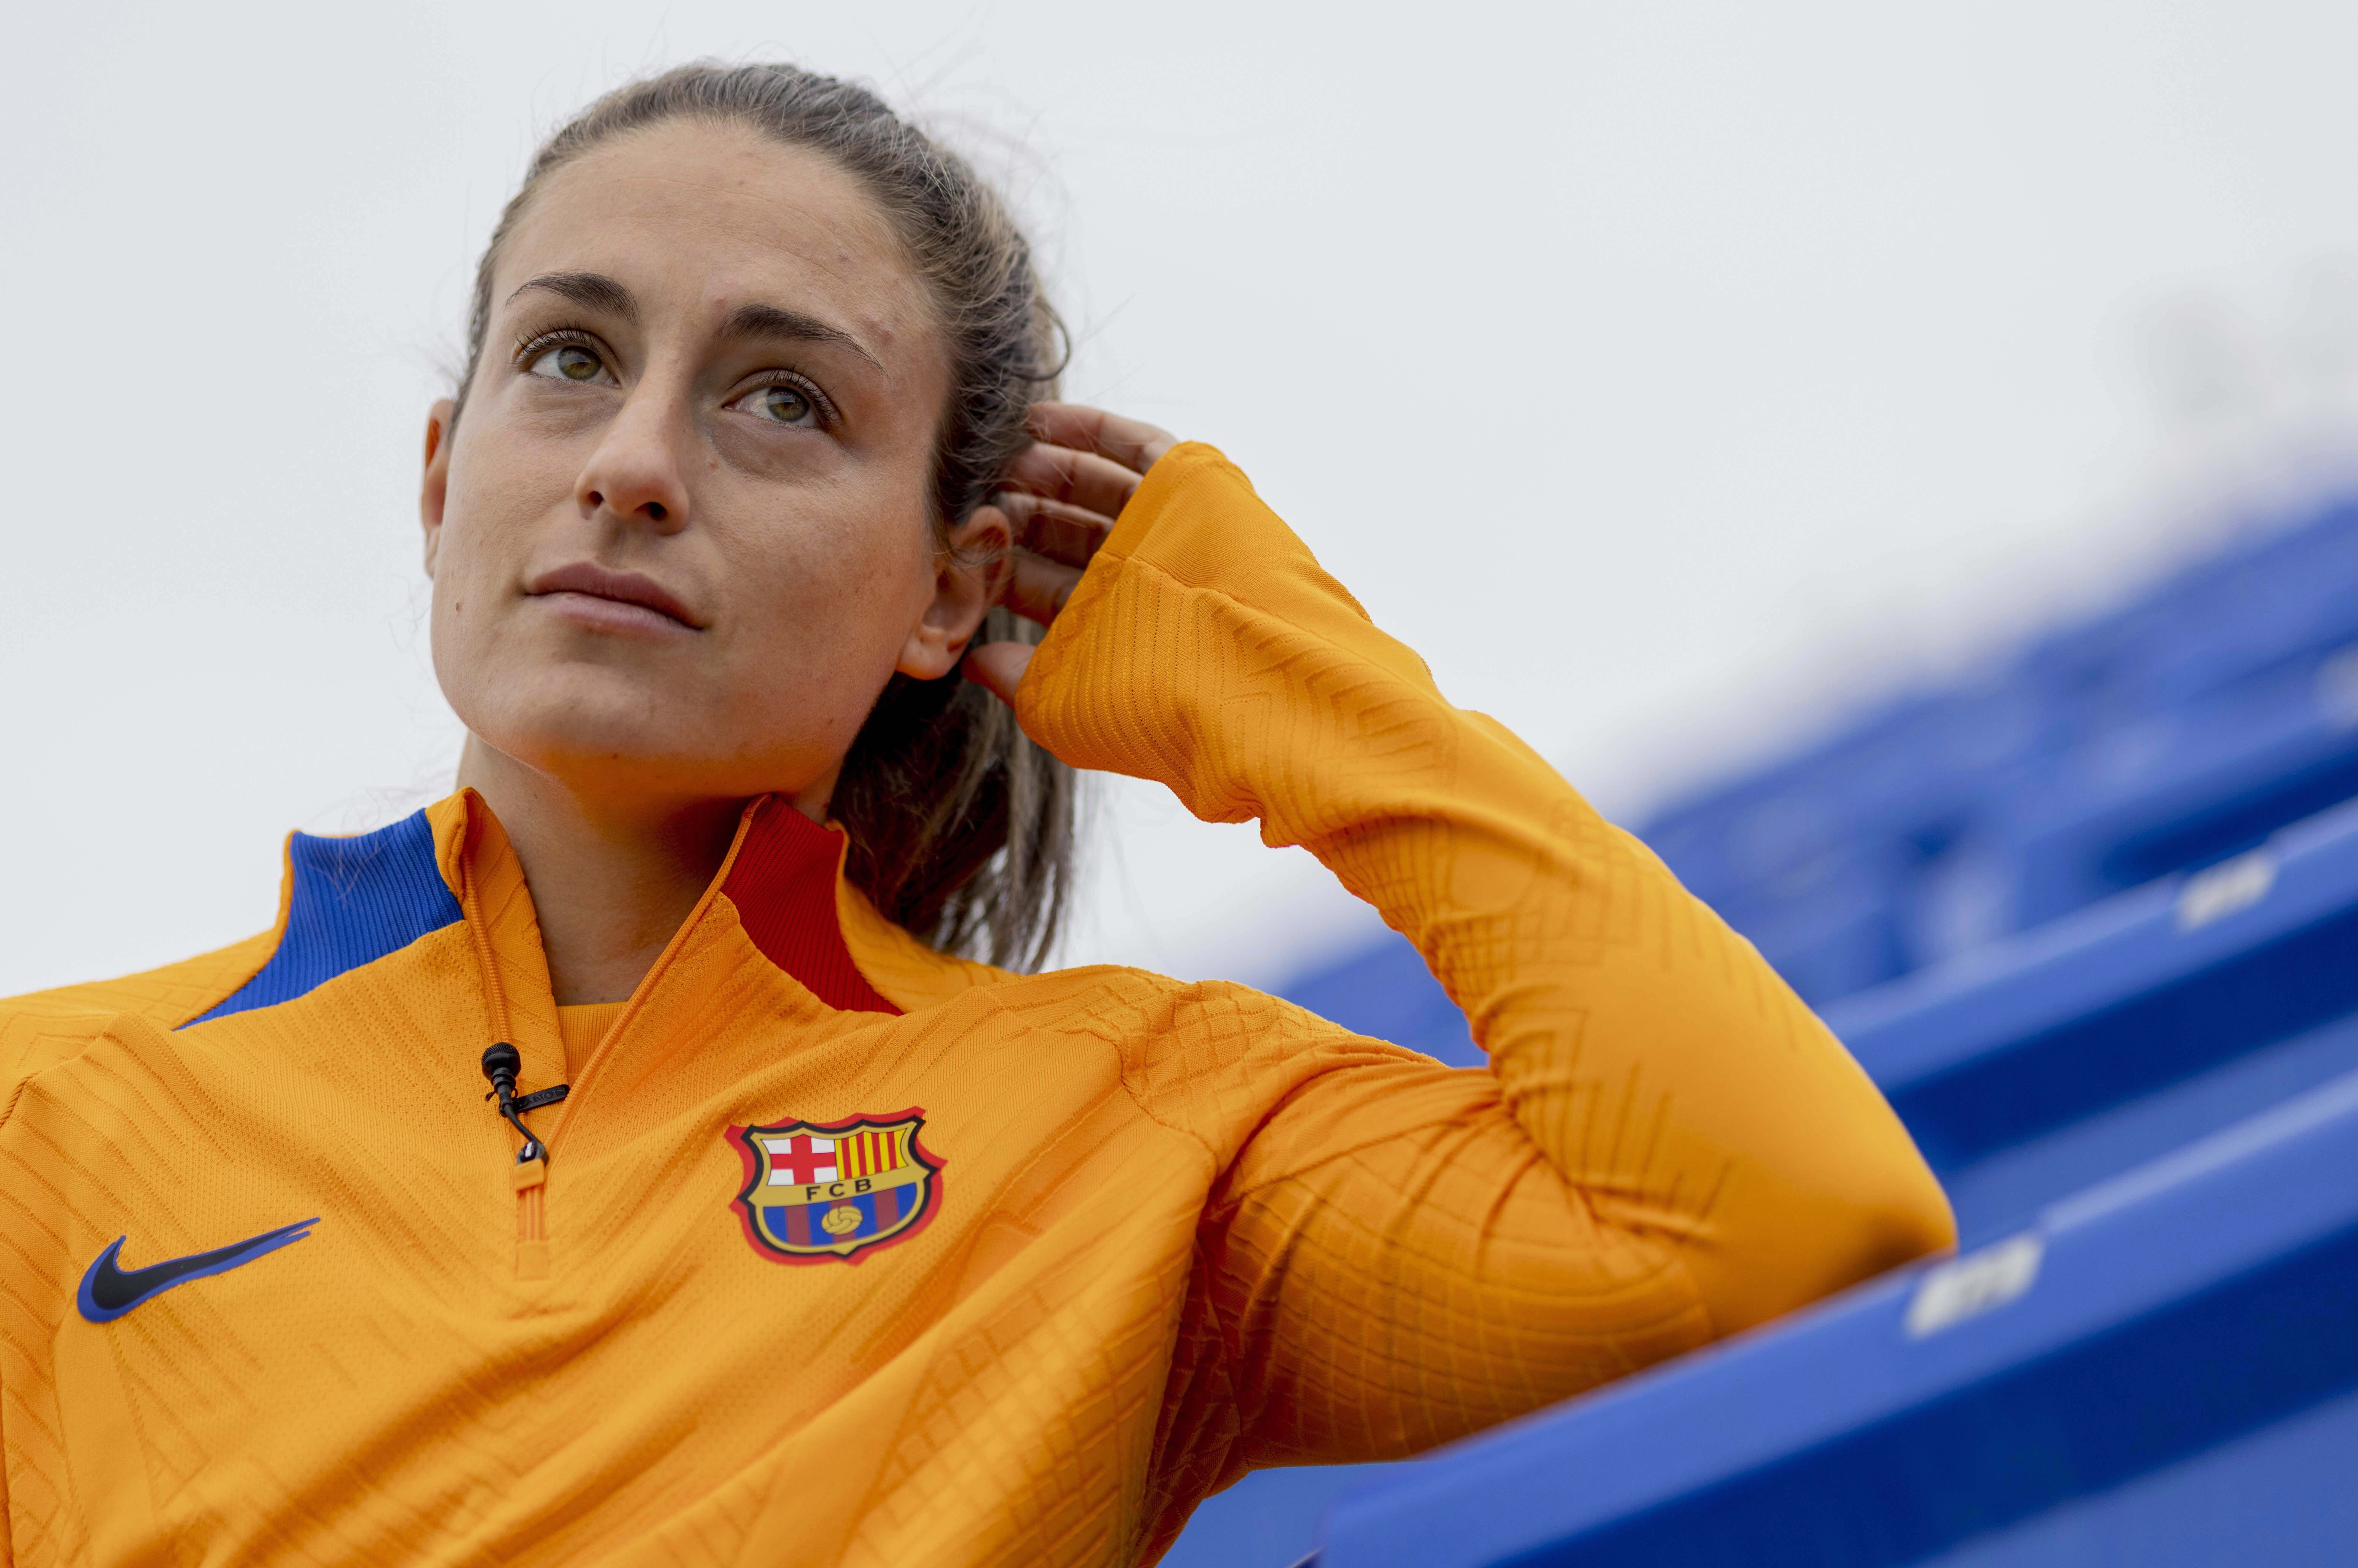 Las chicas del Barça aniquilan a un tertuliano de Madrid por su desprecio: "gentuza"